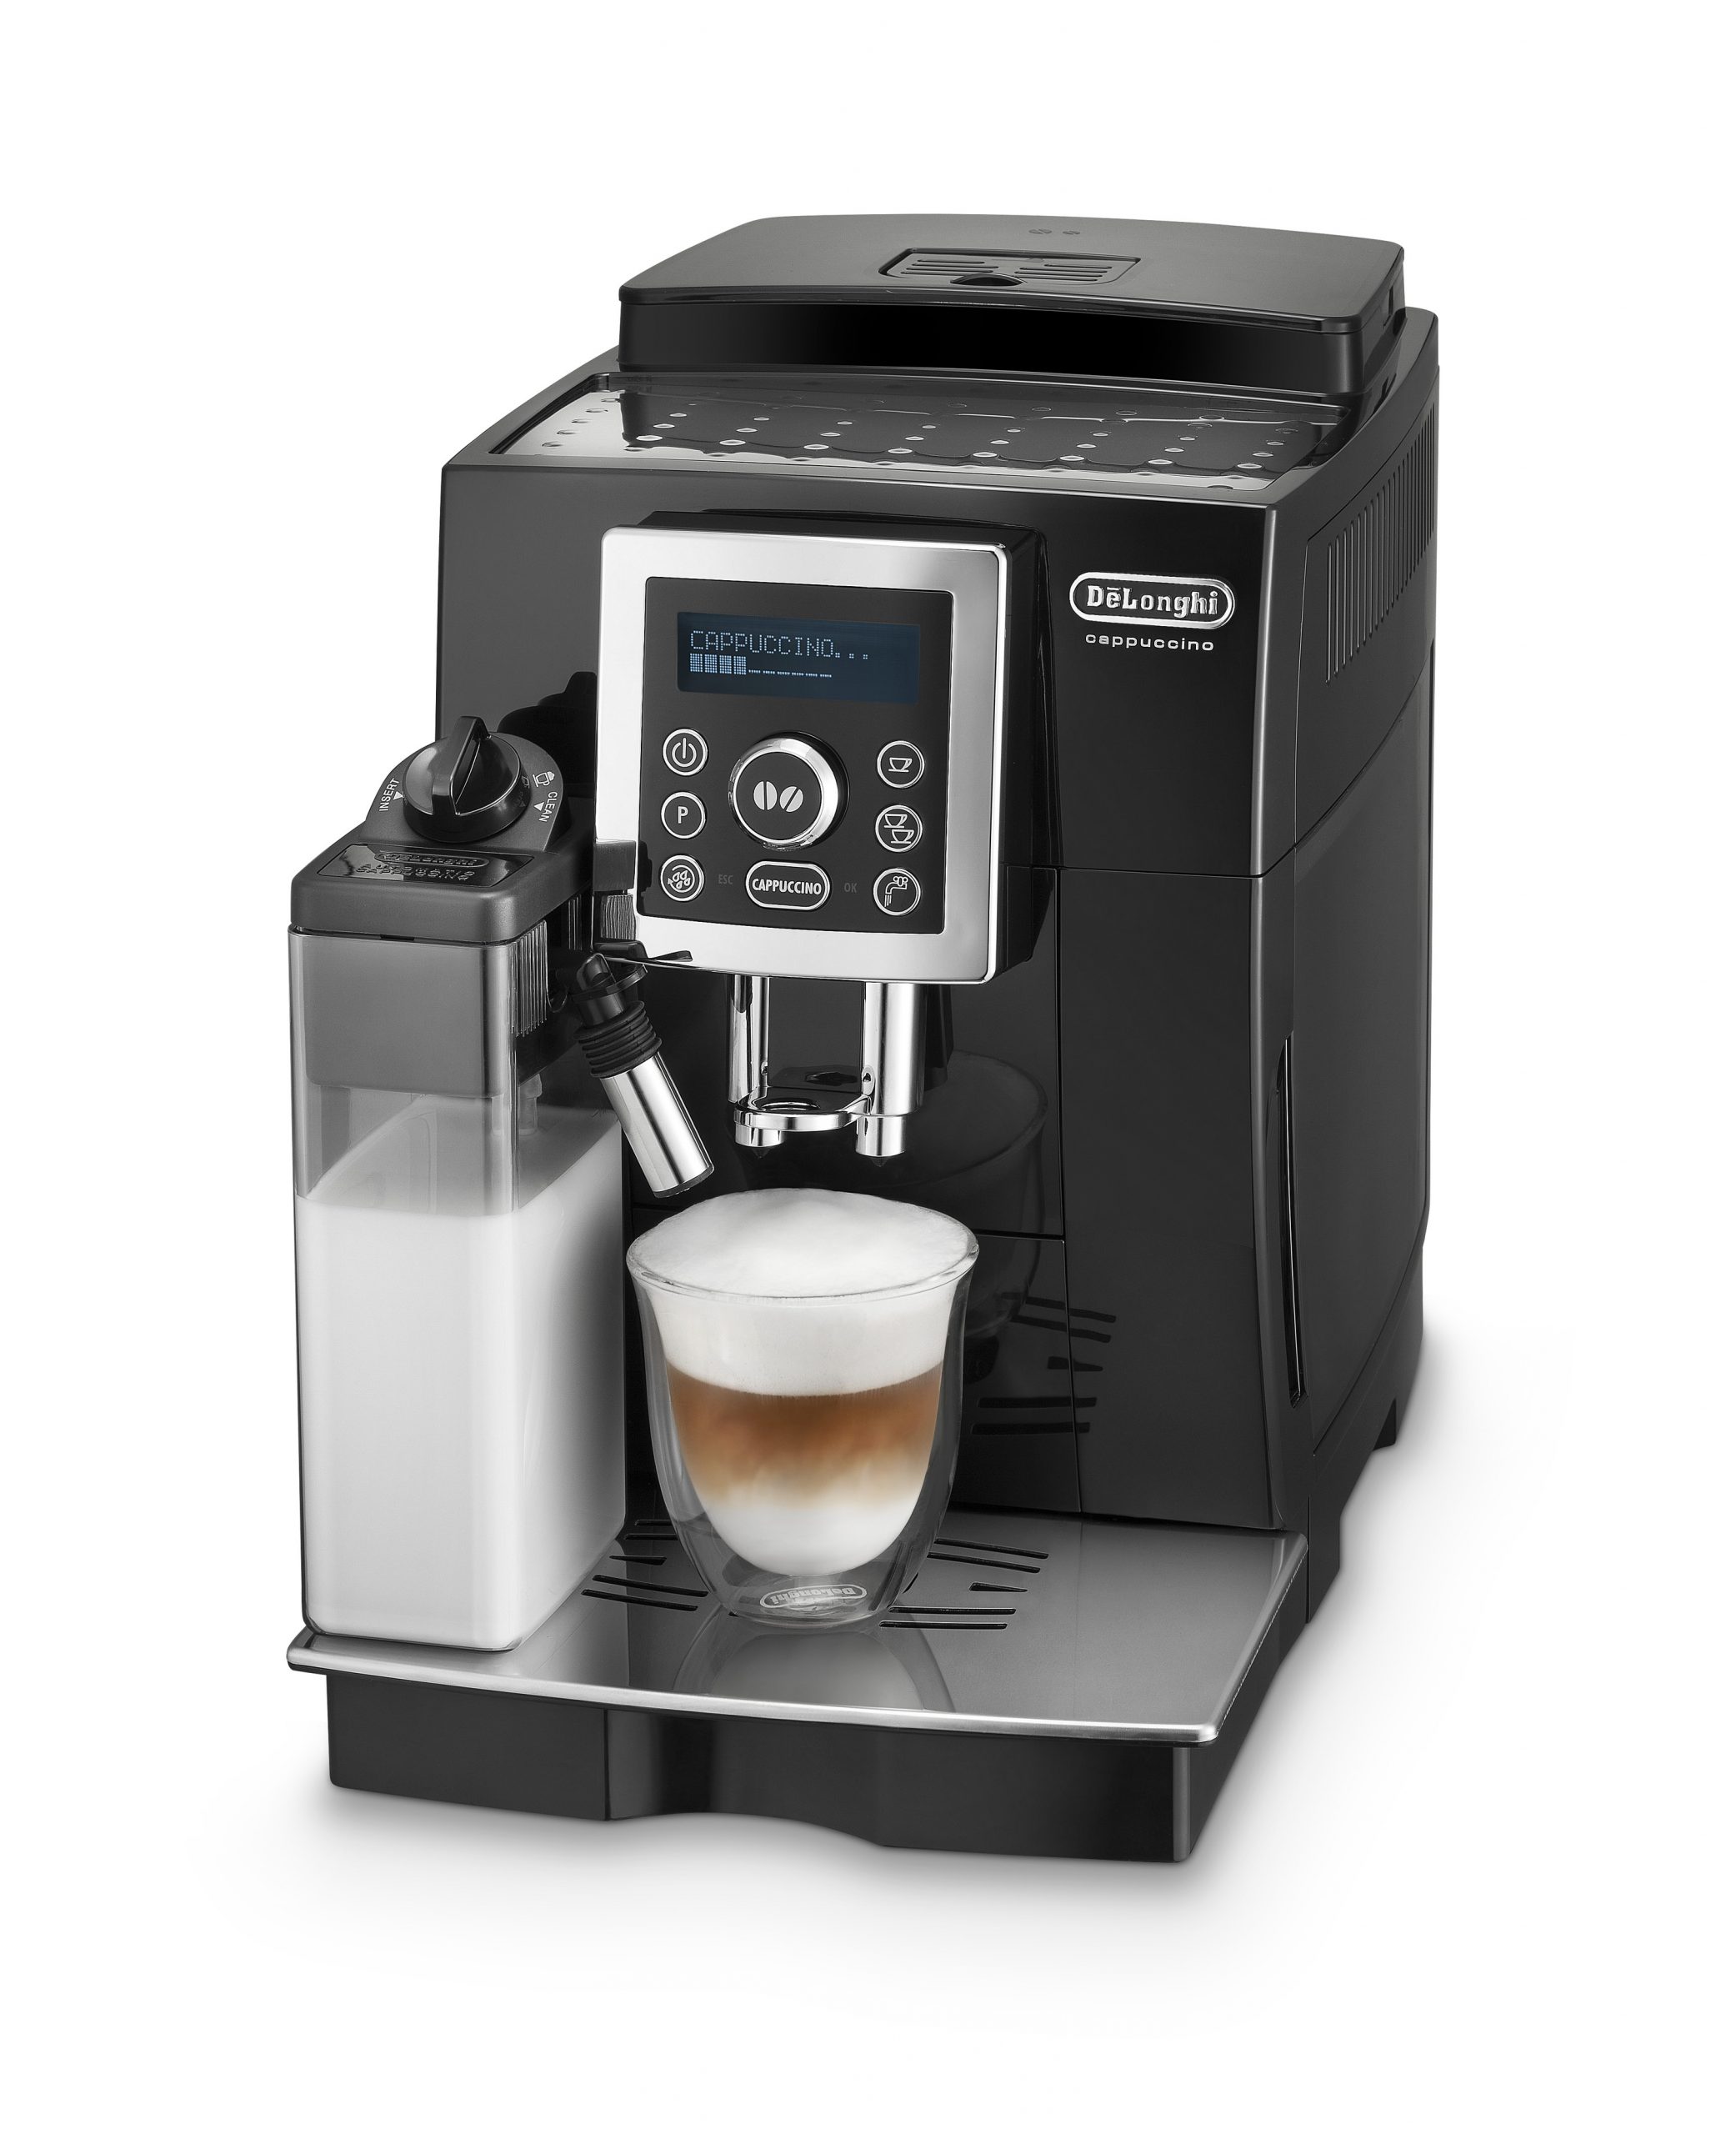 Puede ser la cafetera superautomática que buscas en oferta: esta De'Longhi  te ofrece espressos y café lattes exquisitos y rápidos